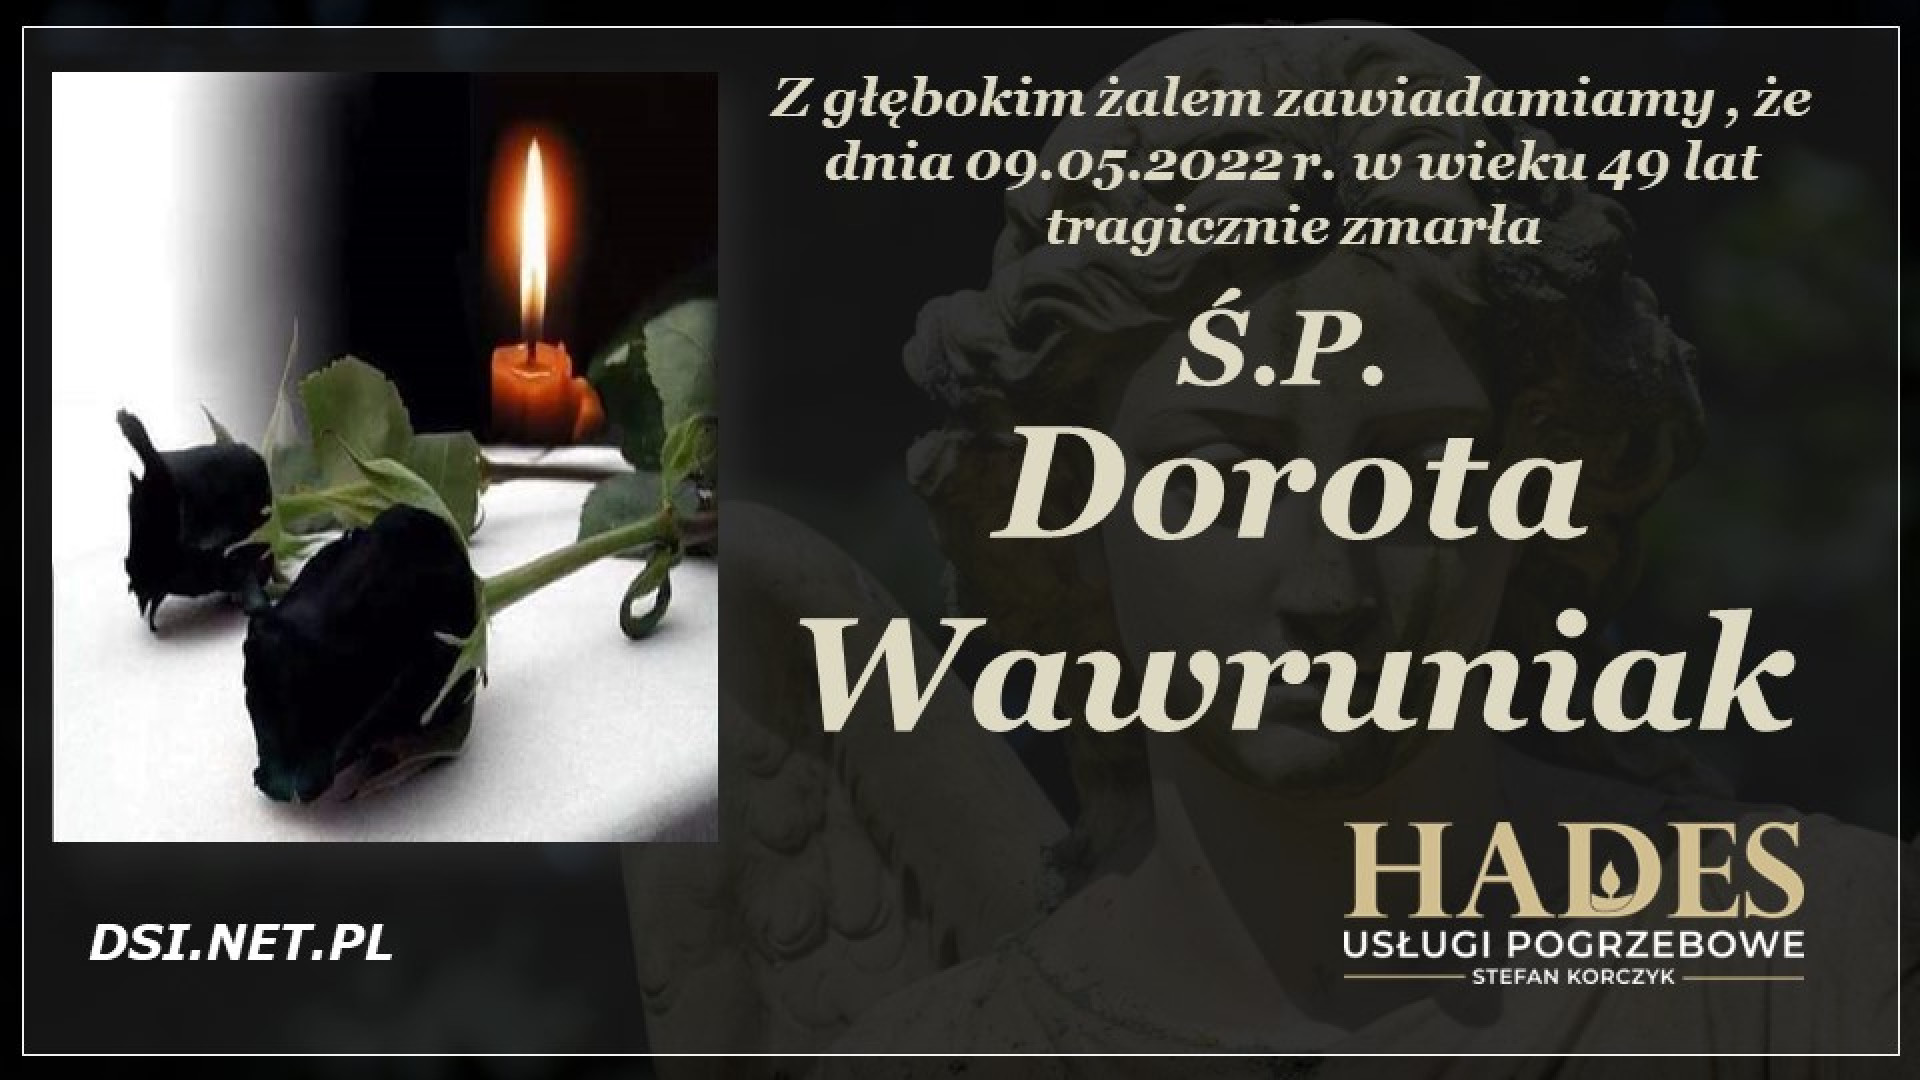 Ś.P. Dorota Wawruniak